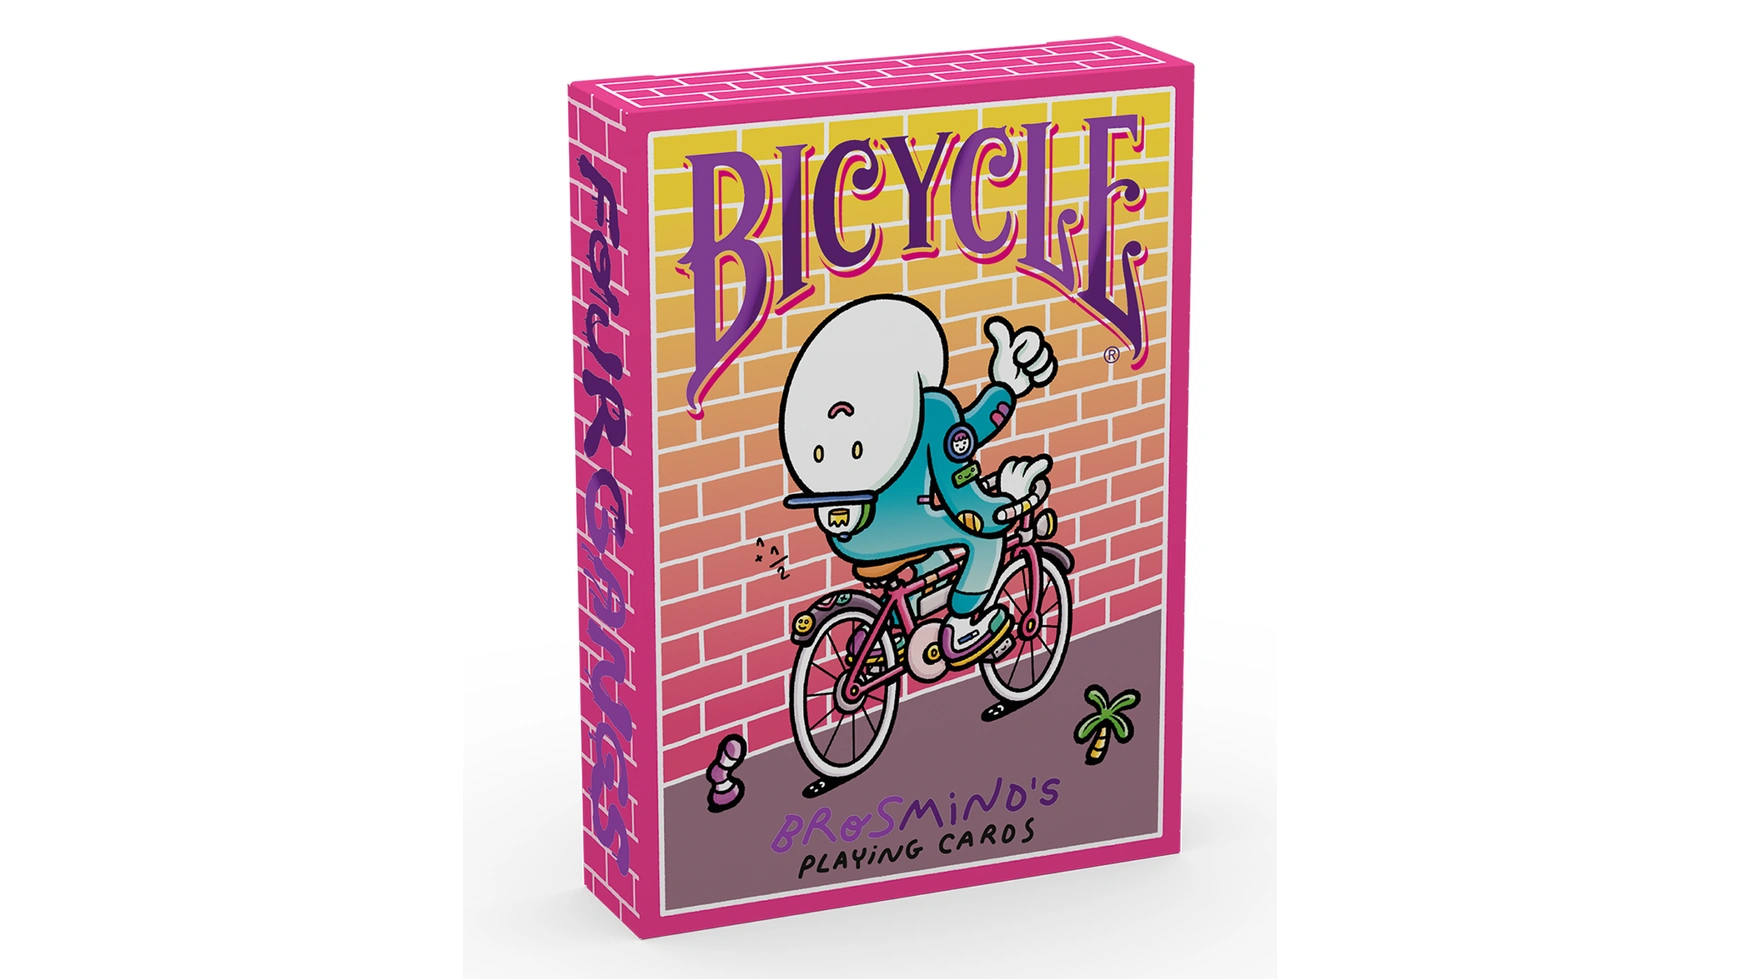 Bicycle Brosmind Four Gangs карты bicycle stripper deck blue 1014830